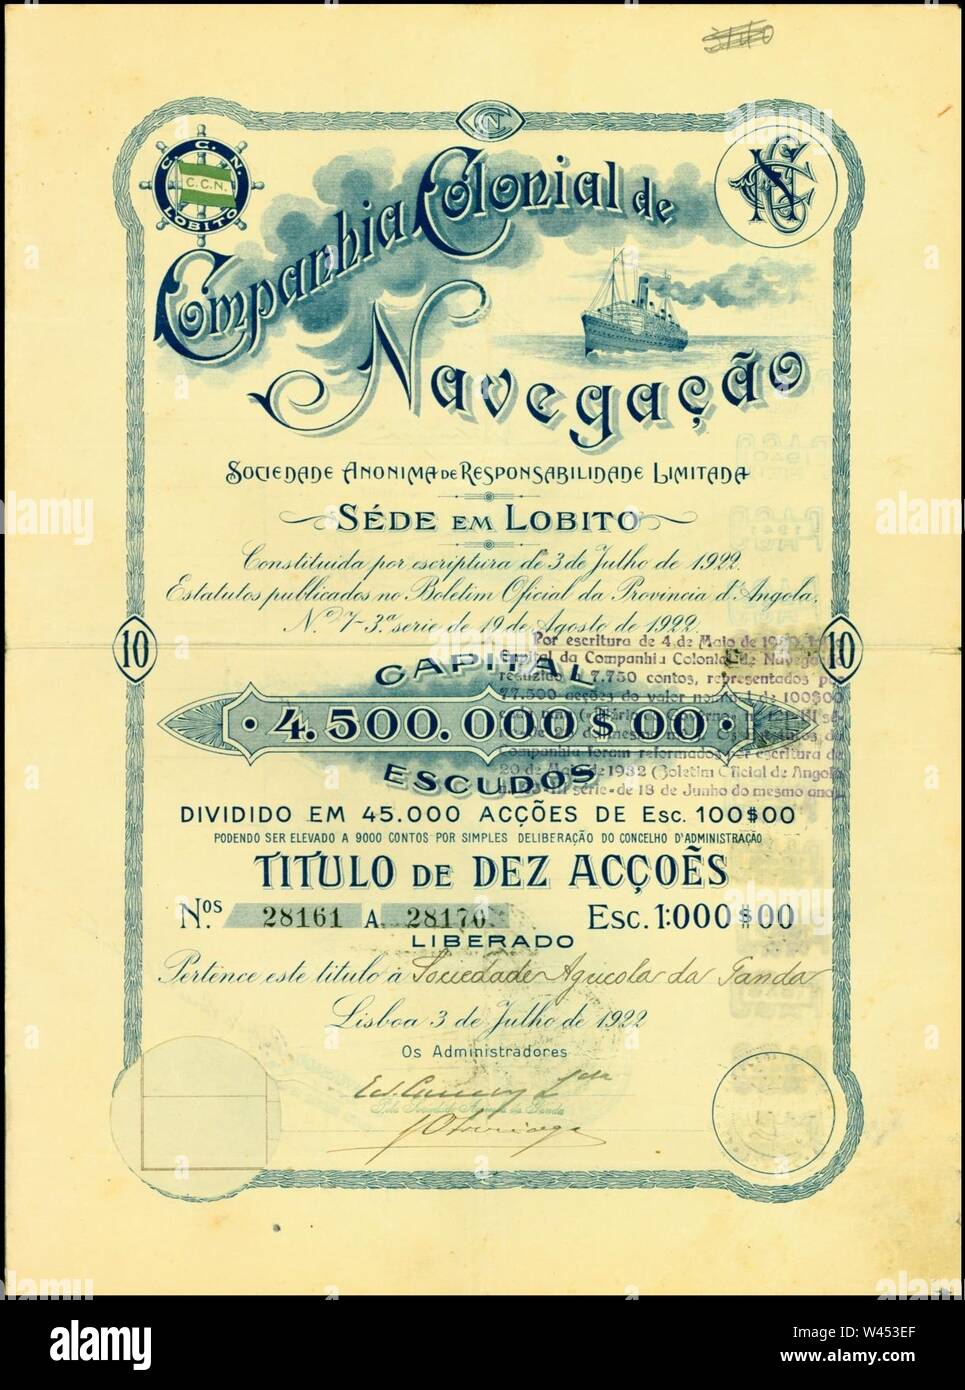 Companhia Colonial de Navegação 1922. Stock Photo